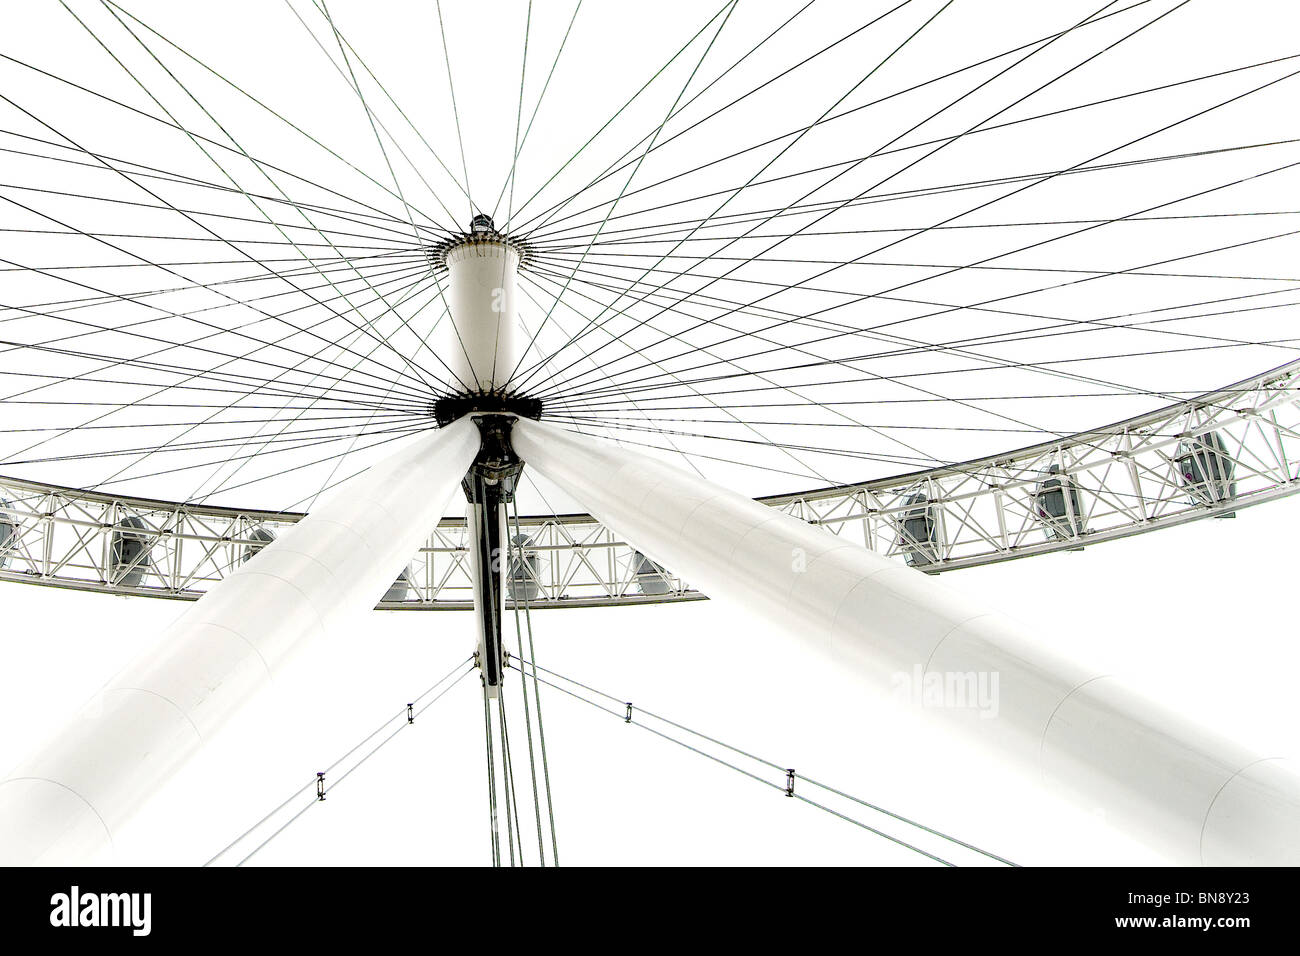 Image à contraste élevé du London Eye à partir d'un angle inhabituel. Banque D'Images